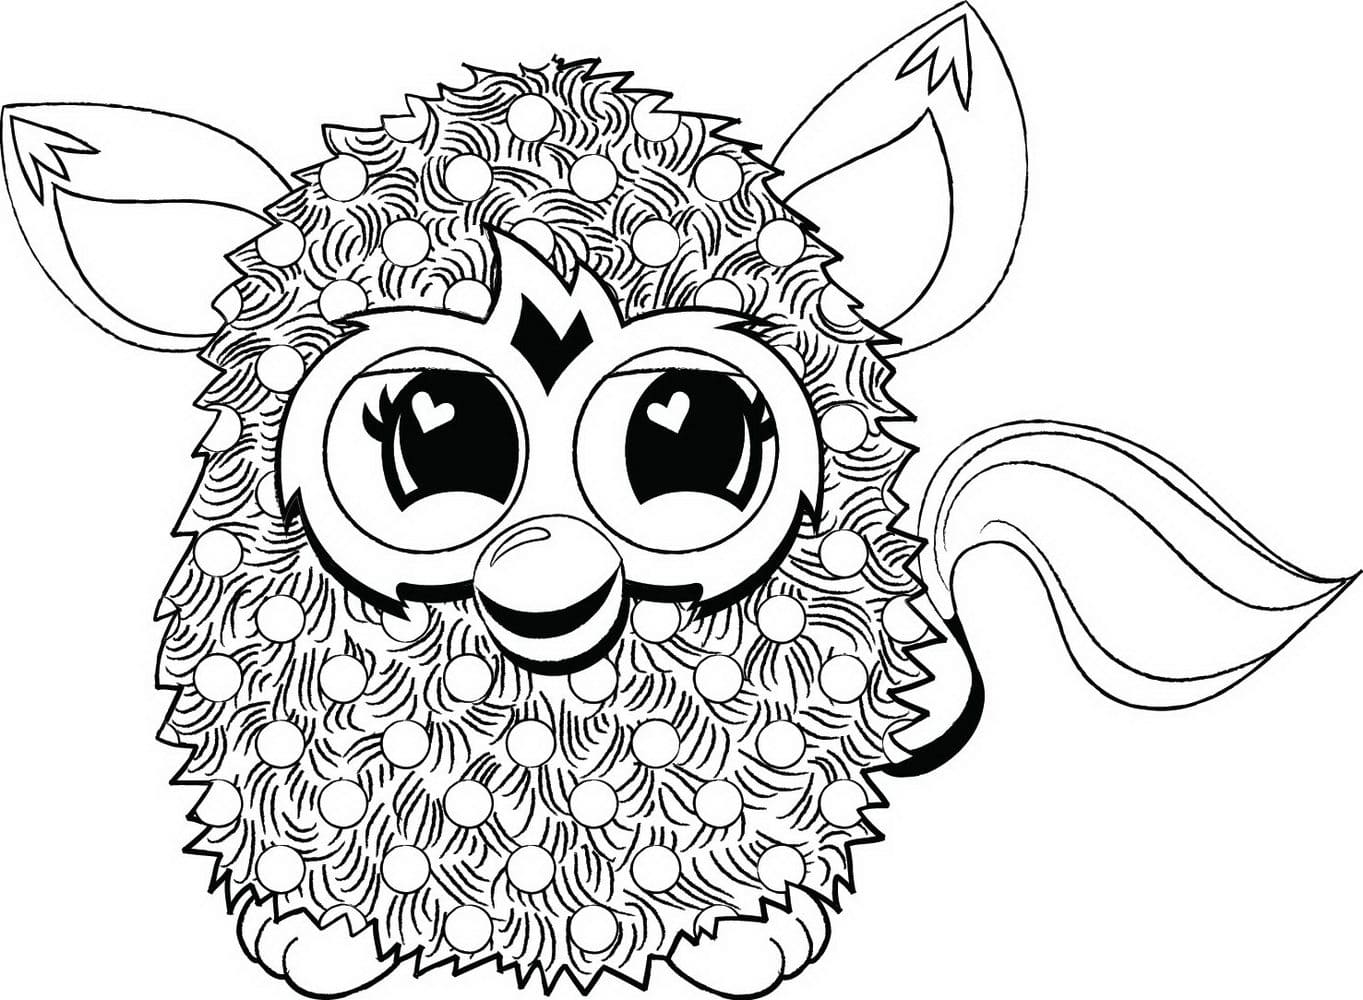 Disegni da colorare Furby. Stampa animali fantastici gratuitamente